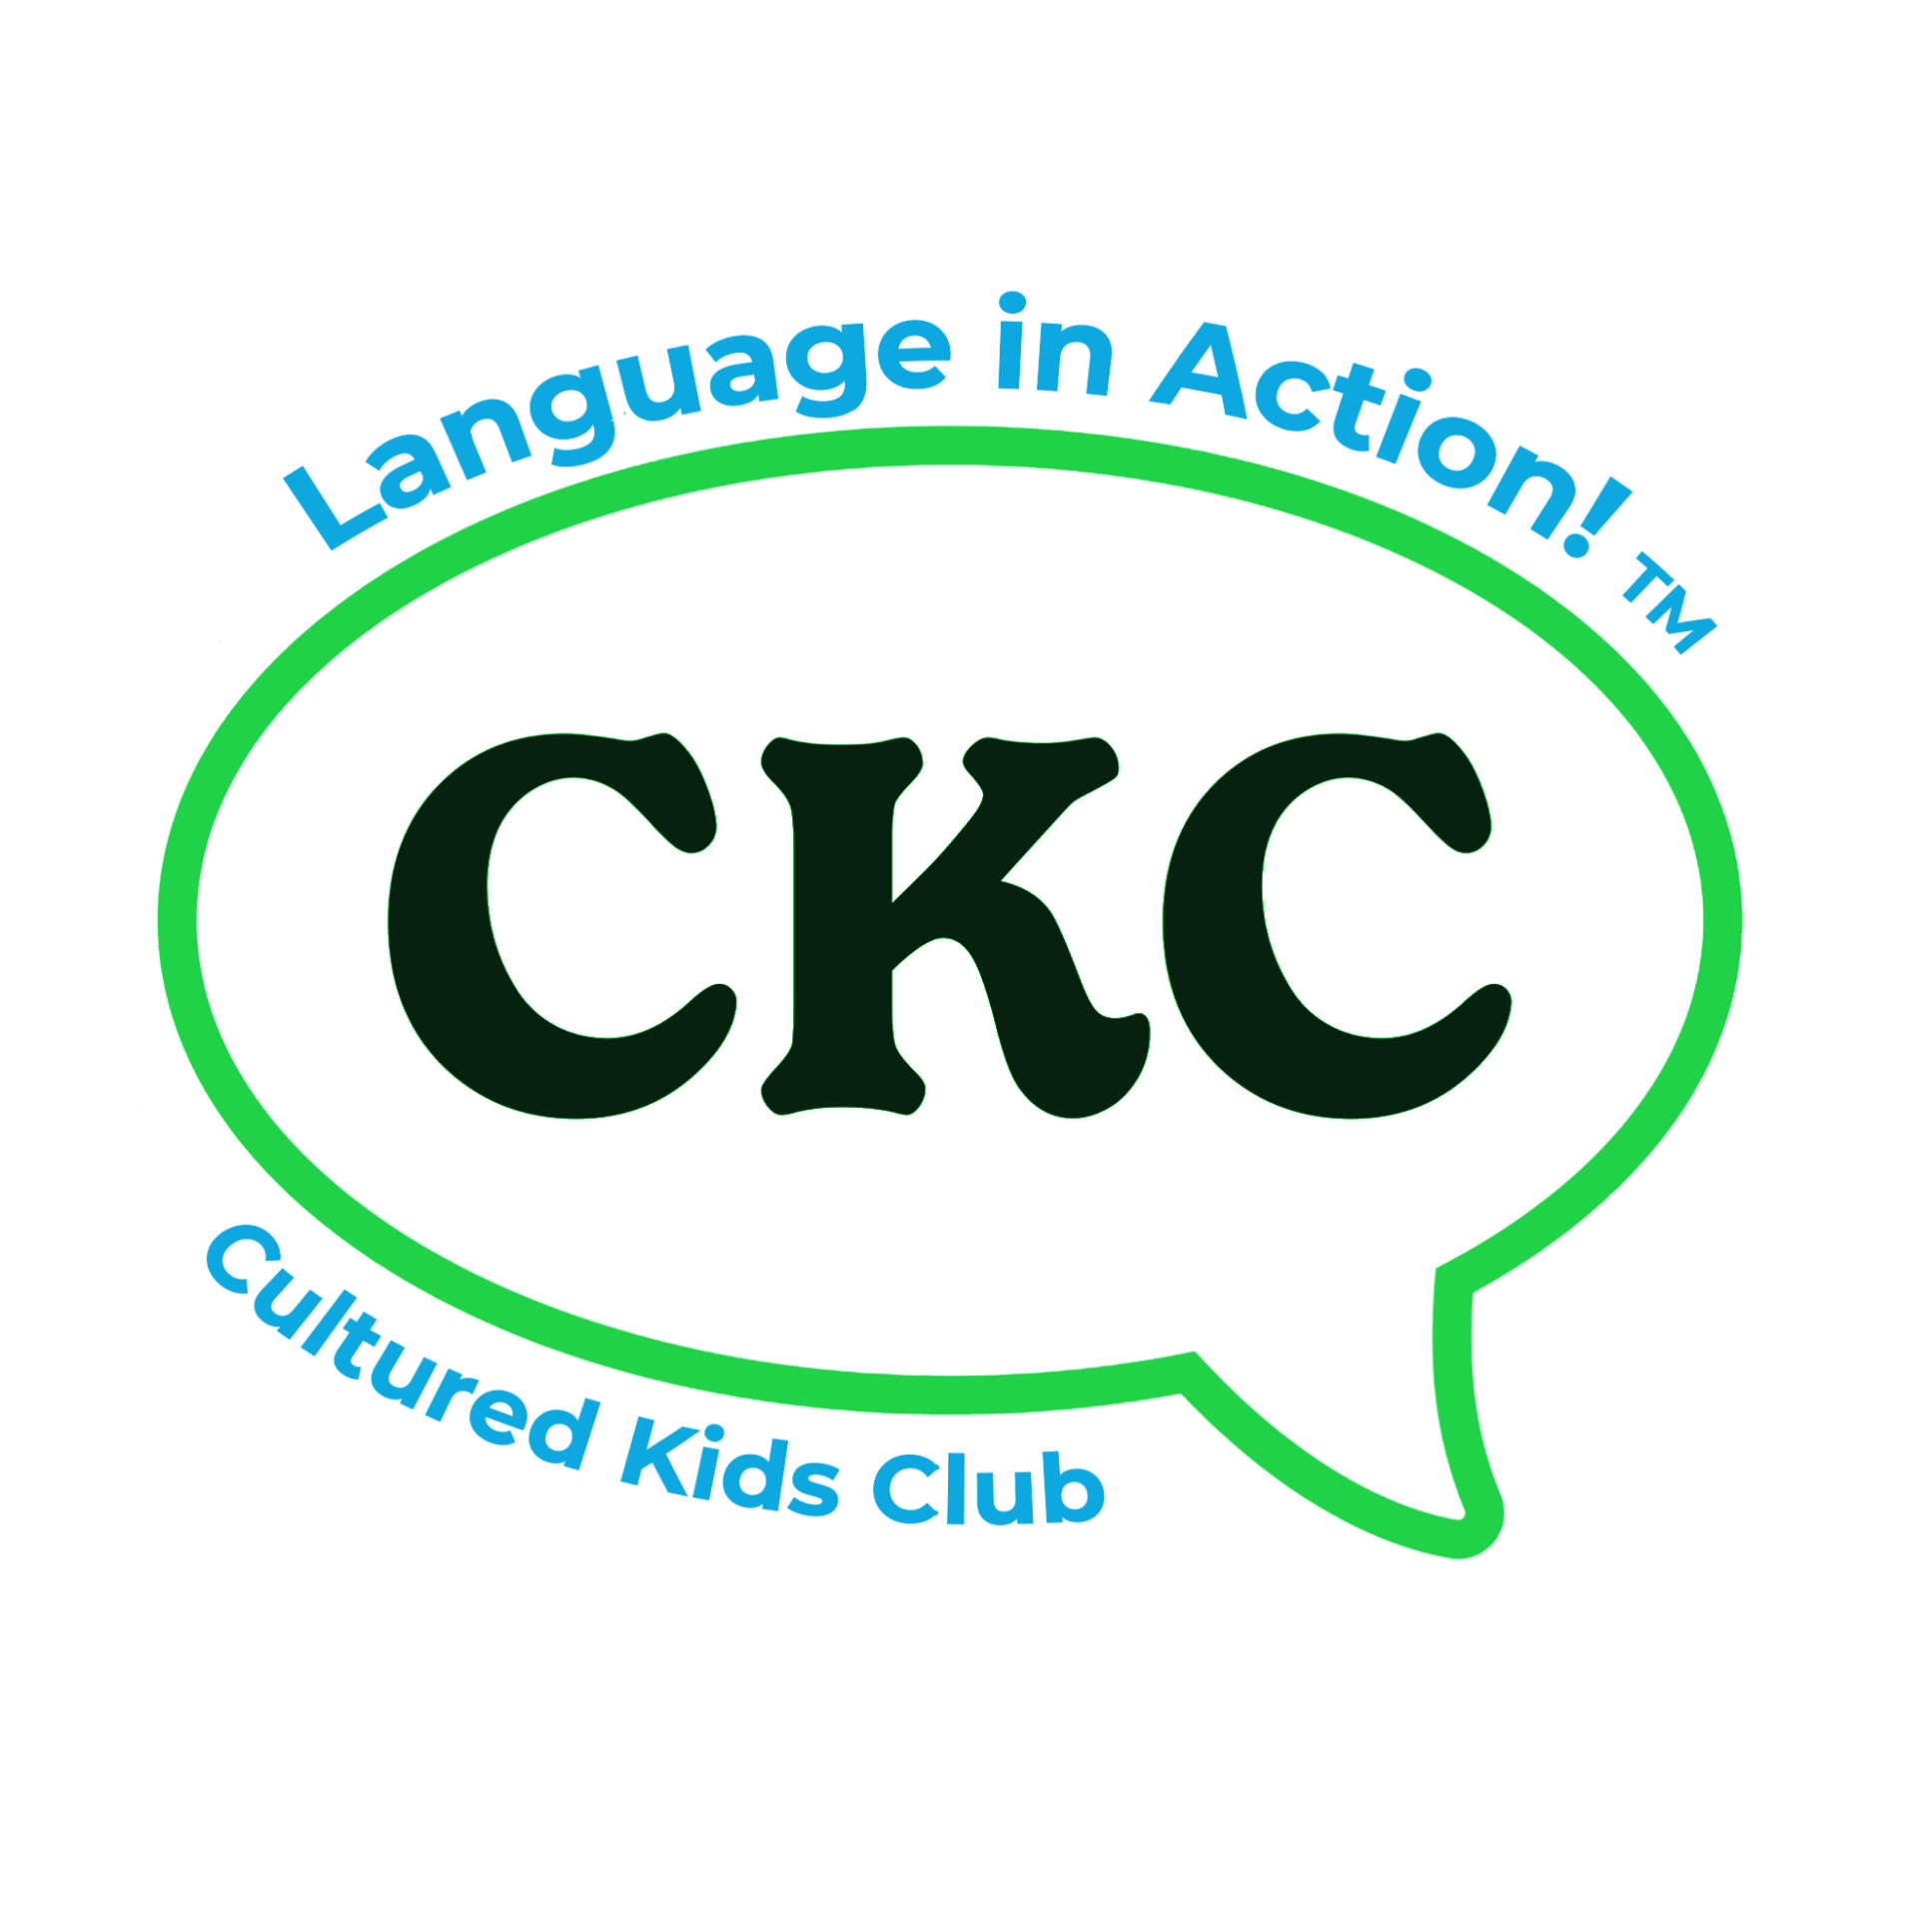 Cultured Kids Club Logo